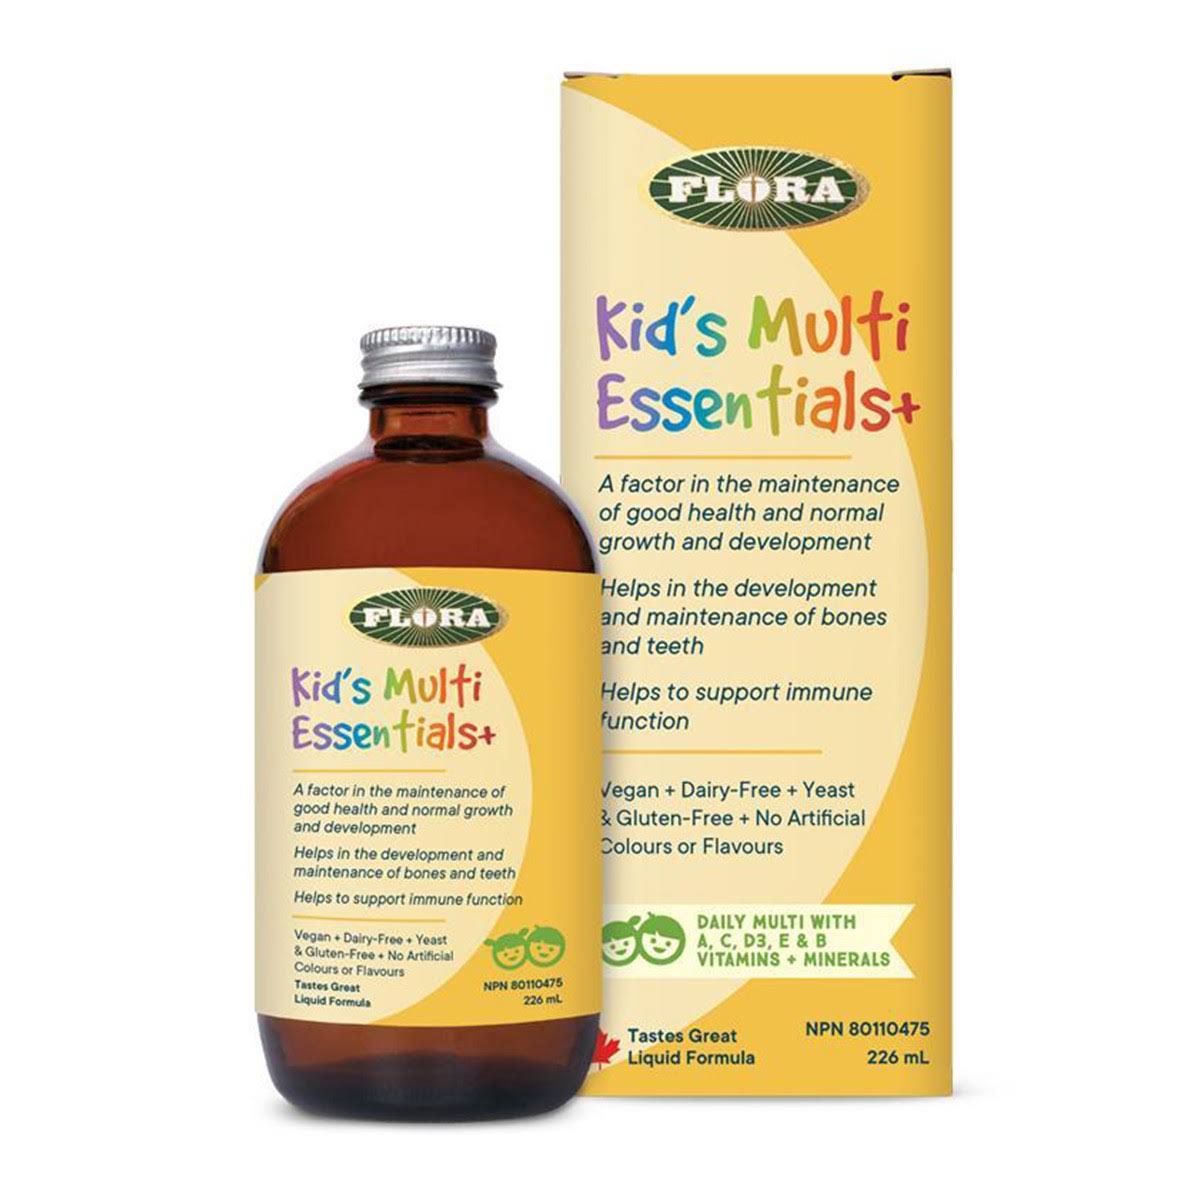 Flora | Kid's Multi Essentials+ Liquid Formula 226 mL